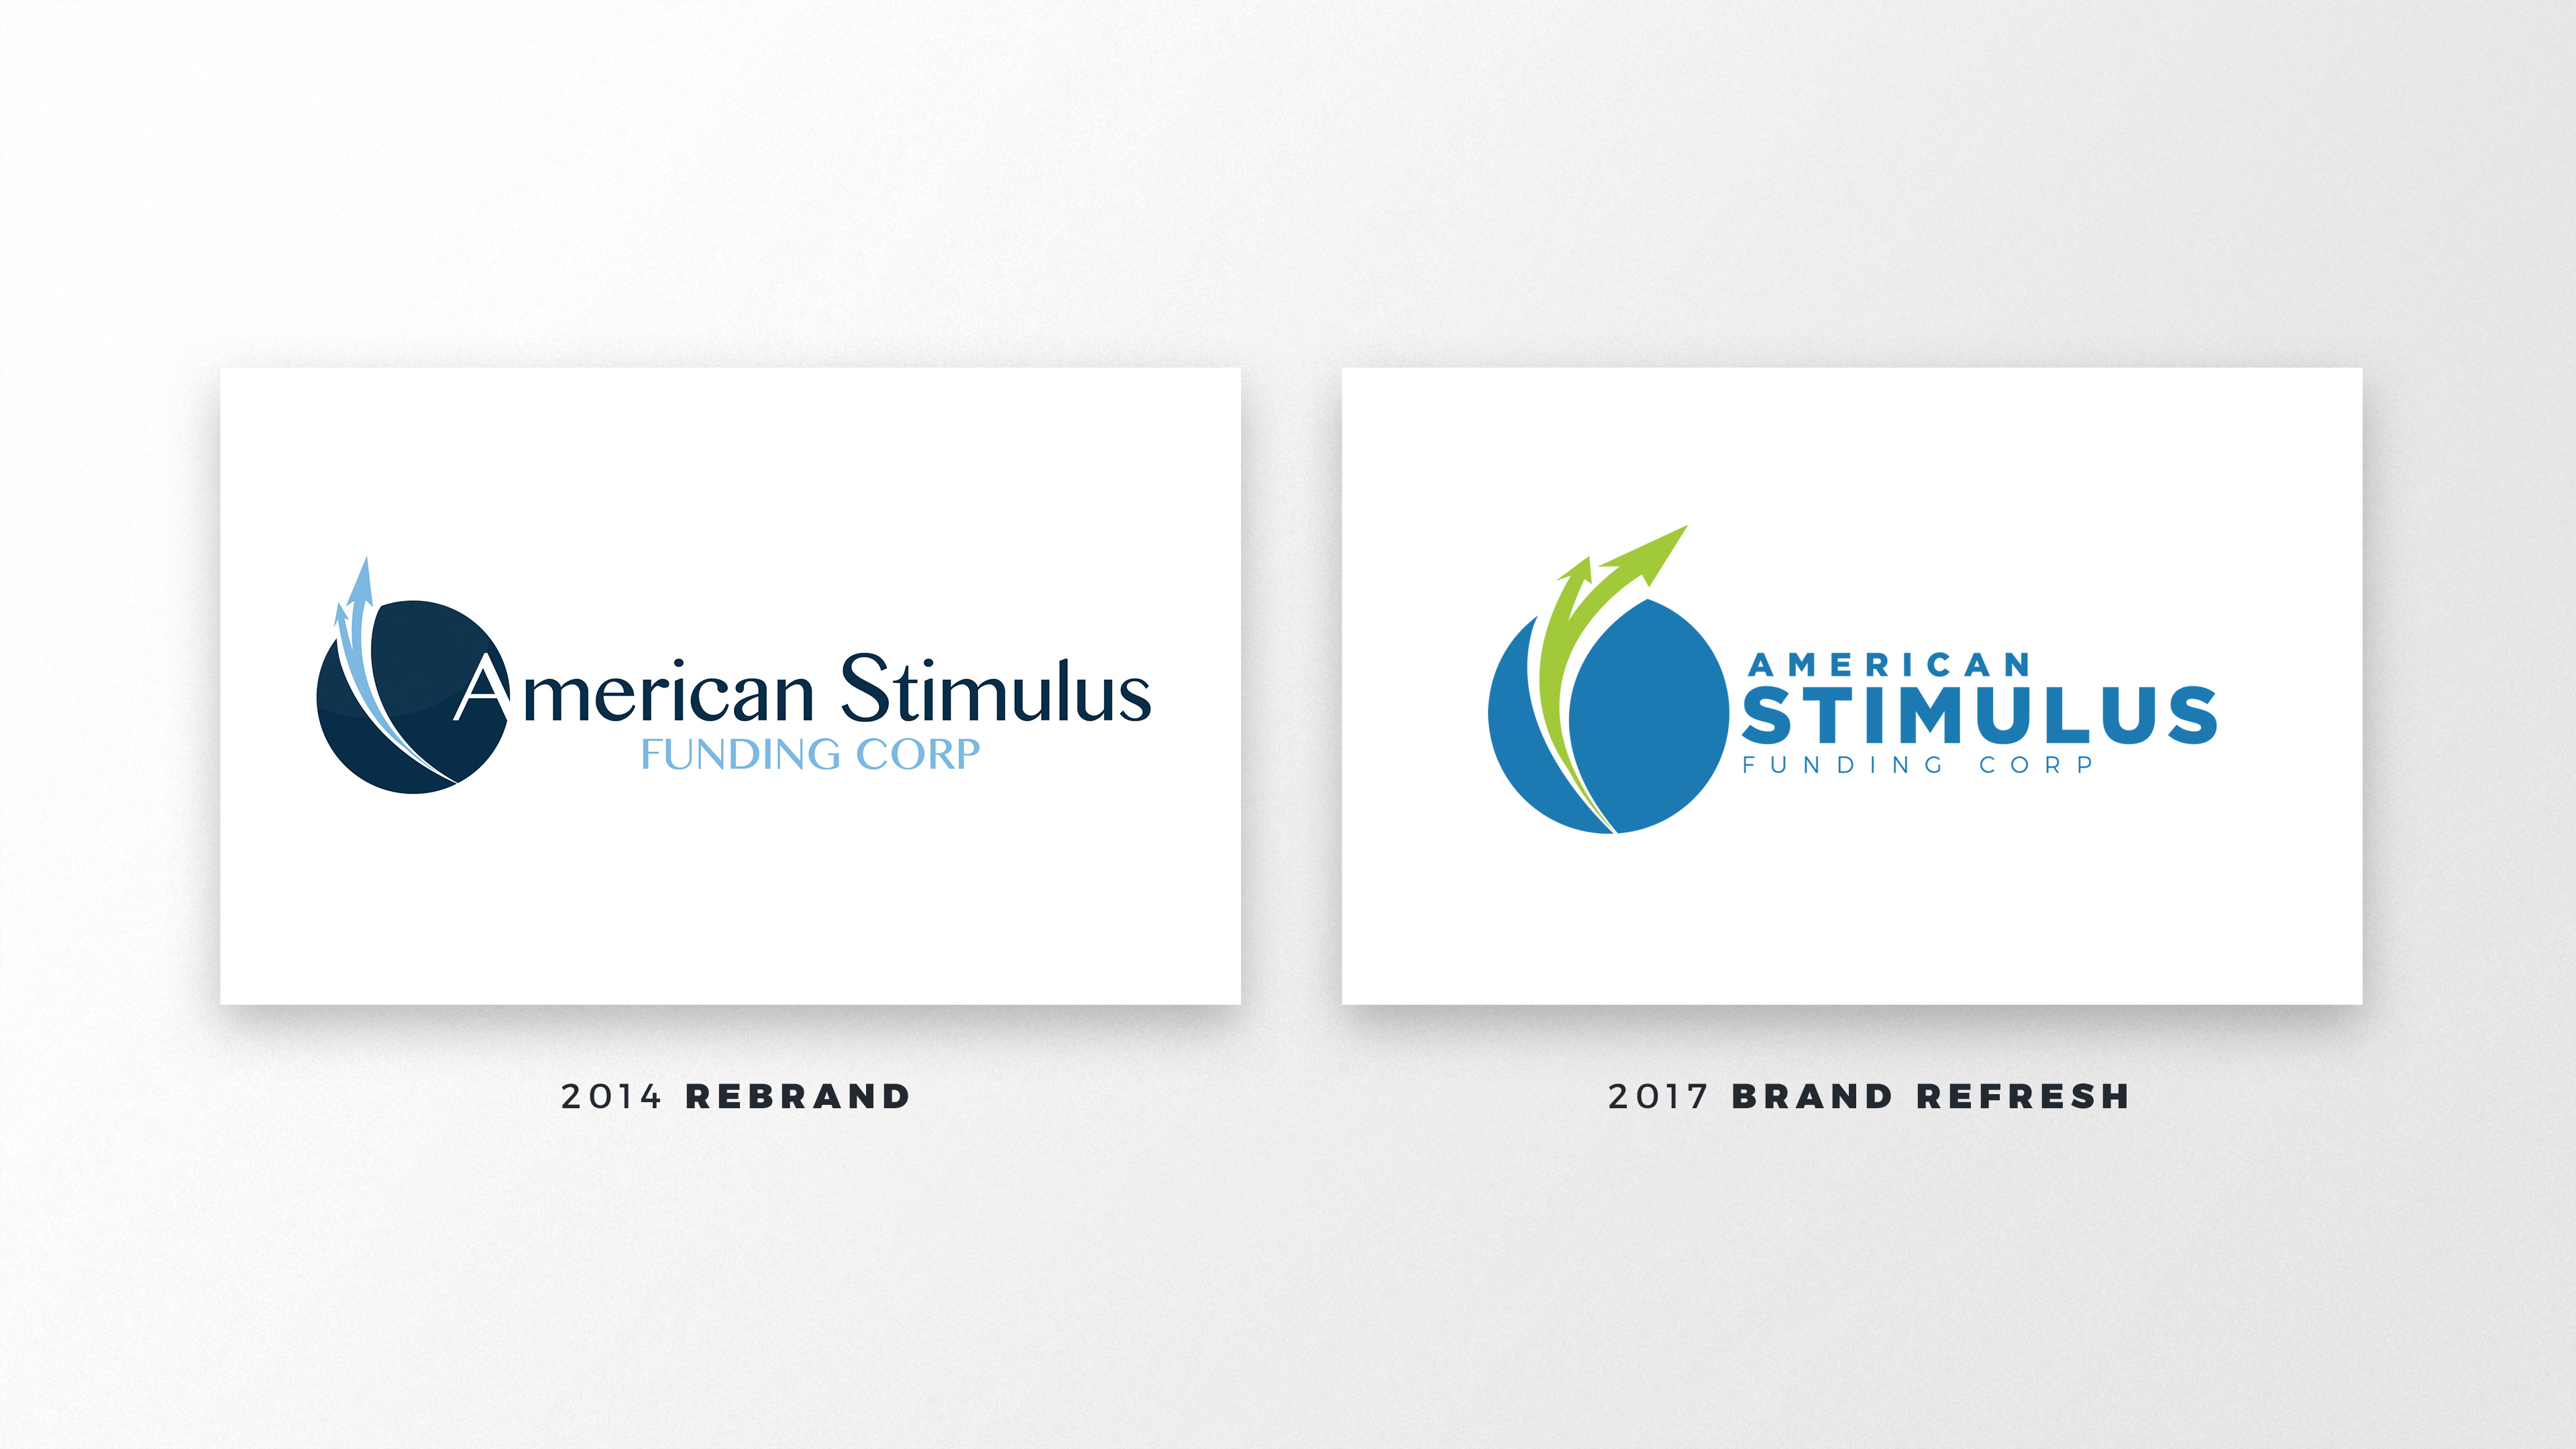 American Stimulus Funding Logos